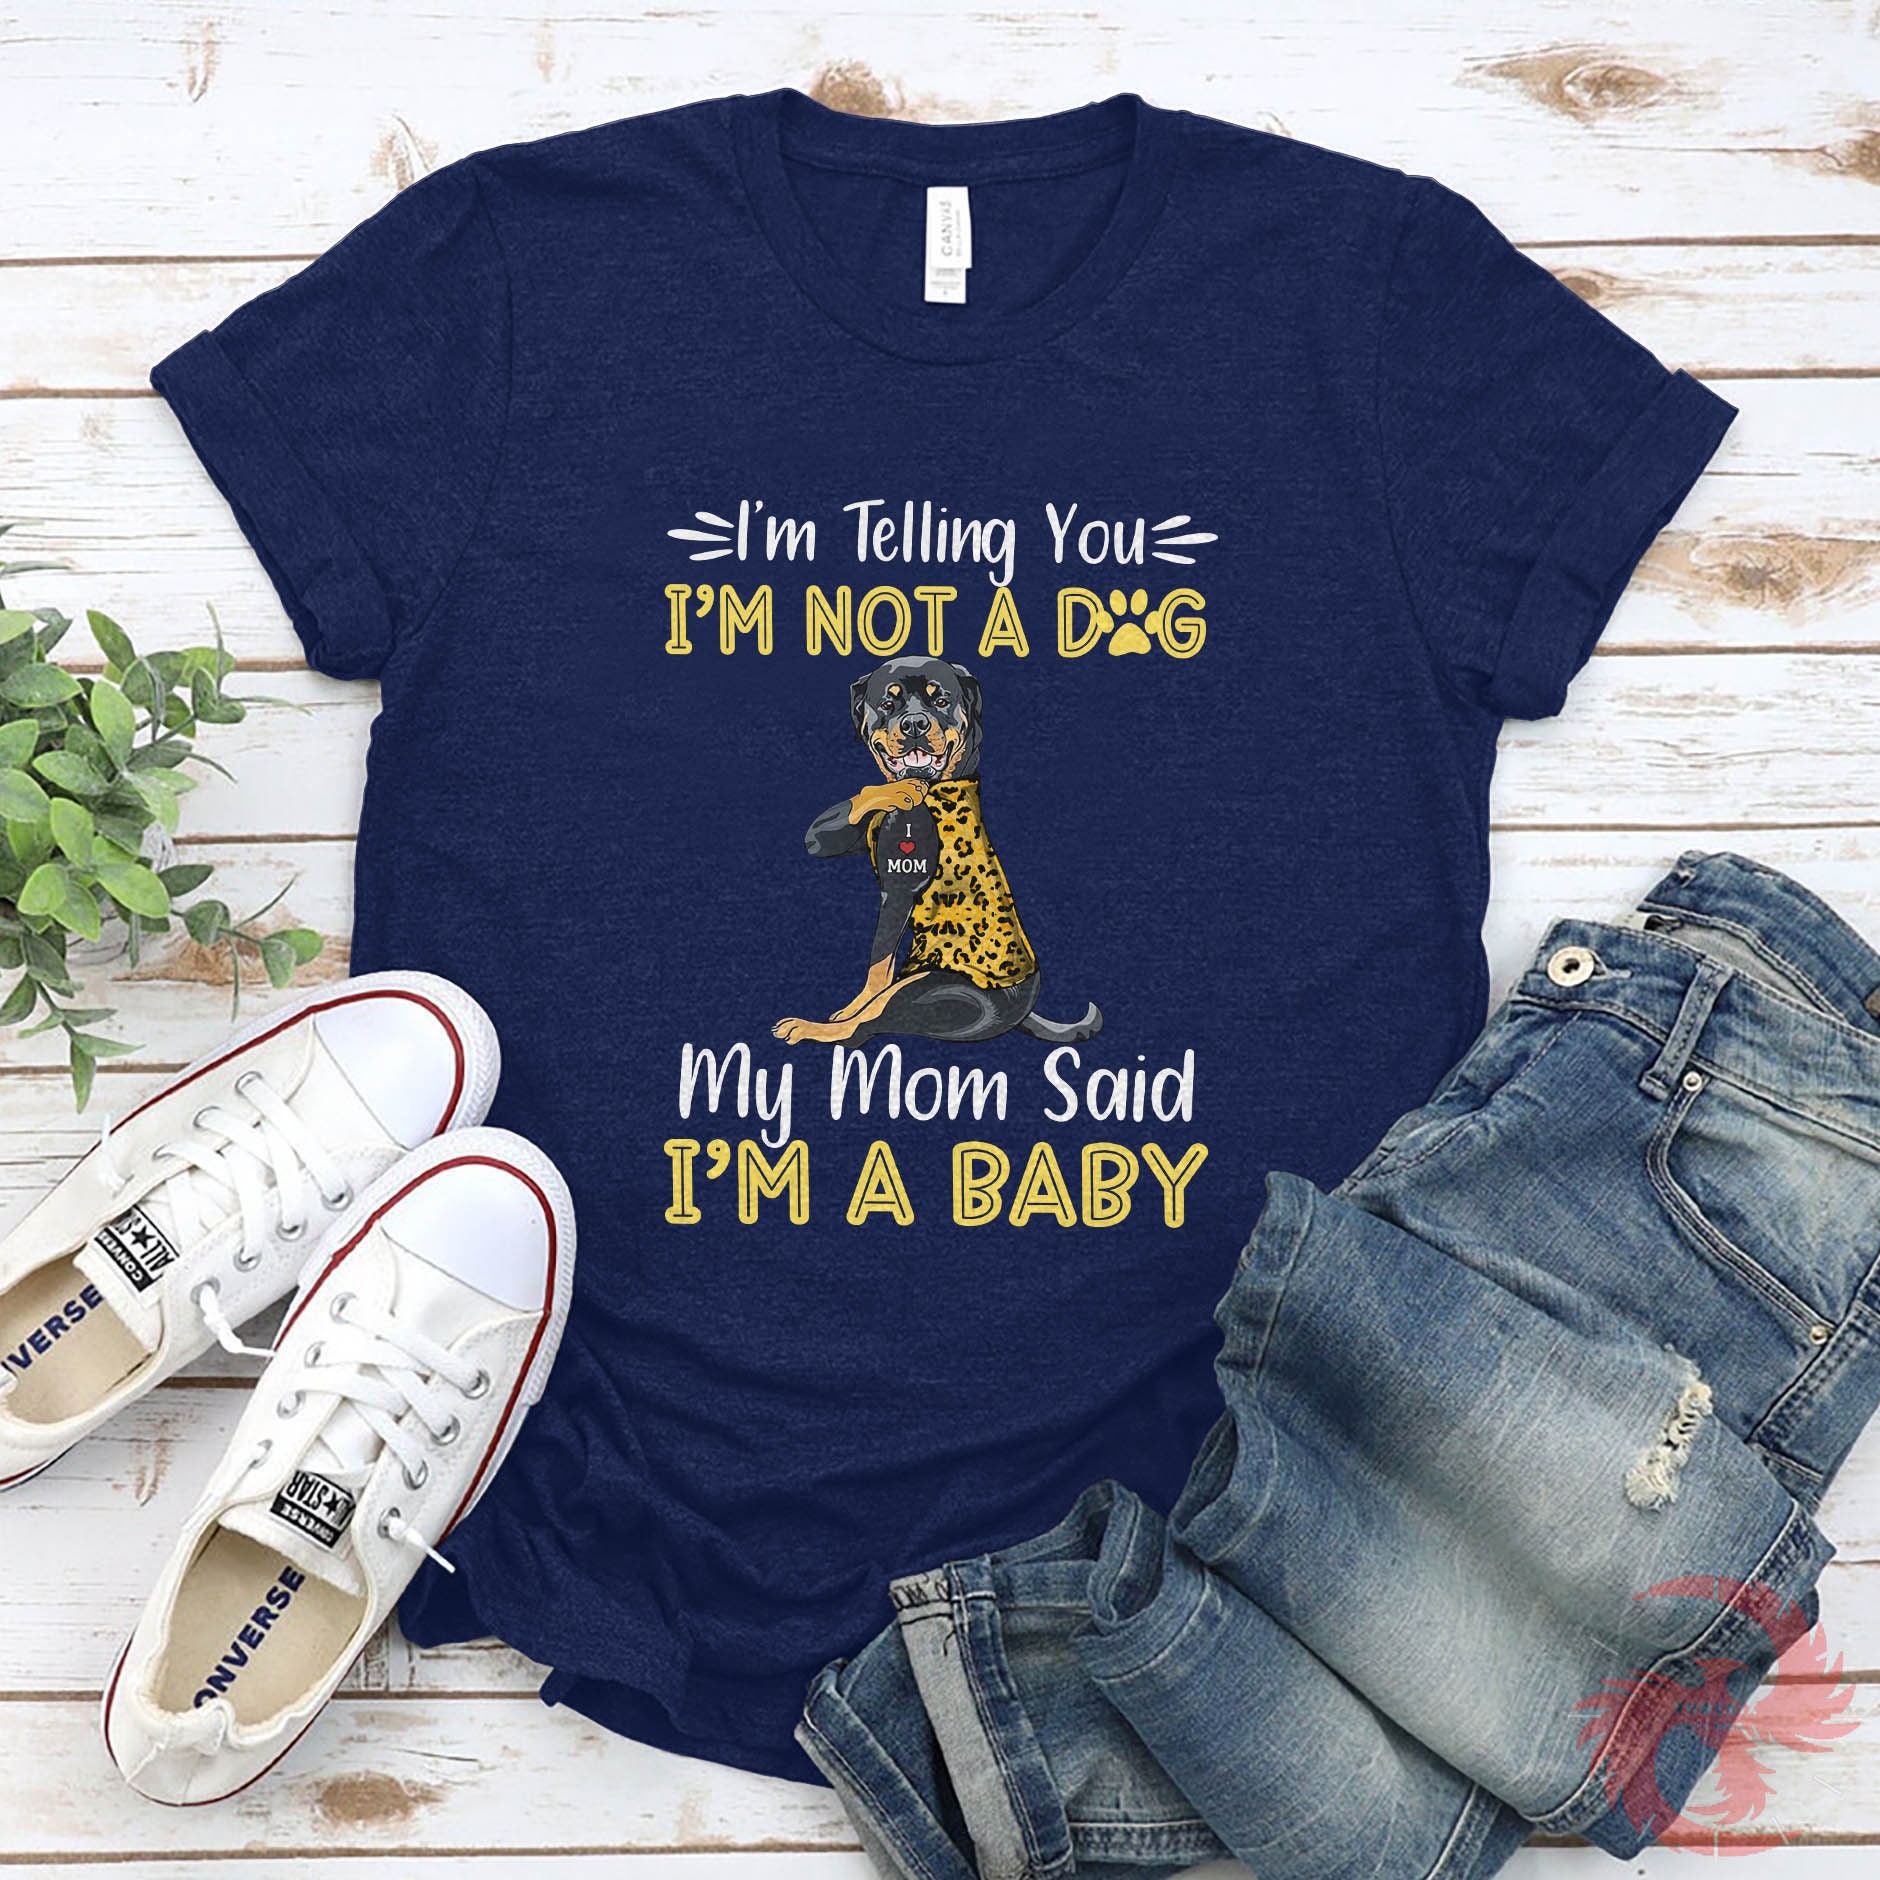 Discover Rottweiler Shirt, My Mom Said I'm A Baby, Rottweiler Gift, Rottweiler Dog Gift, Rottweiler Lover, Rottweiler Dog Lover, DOG066ROTF01